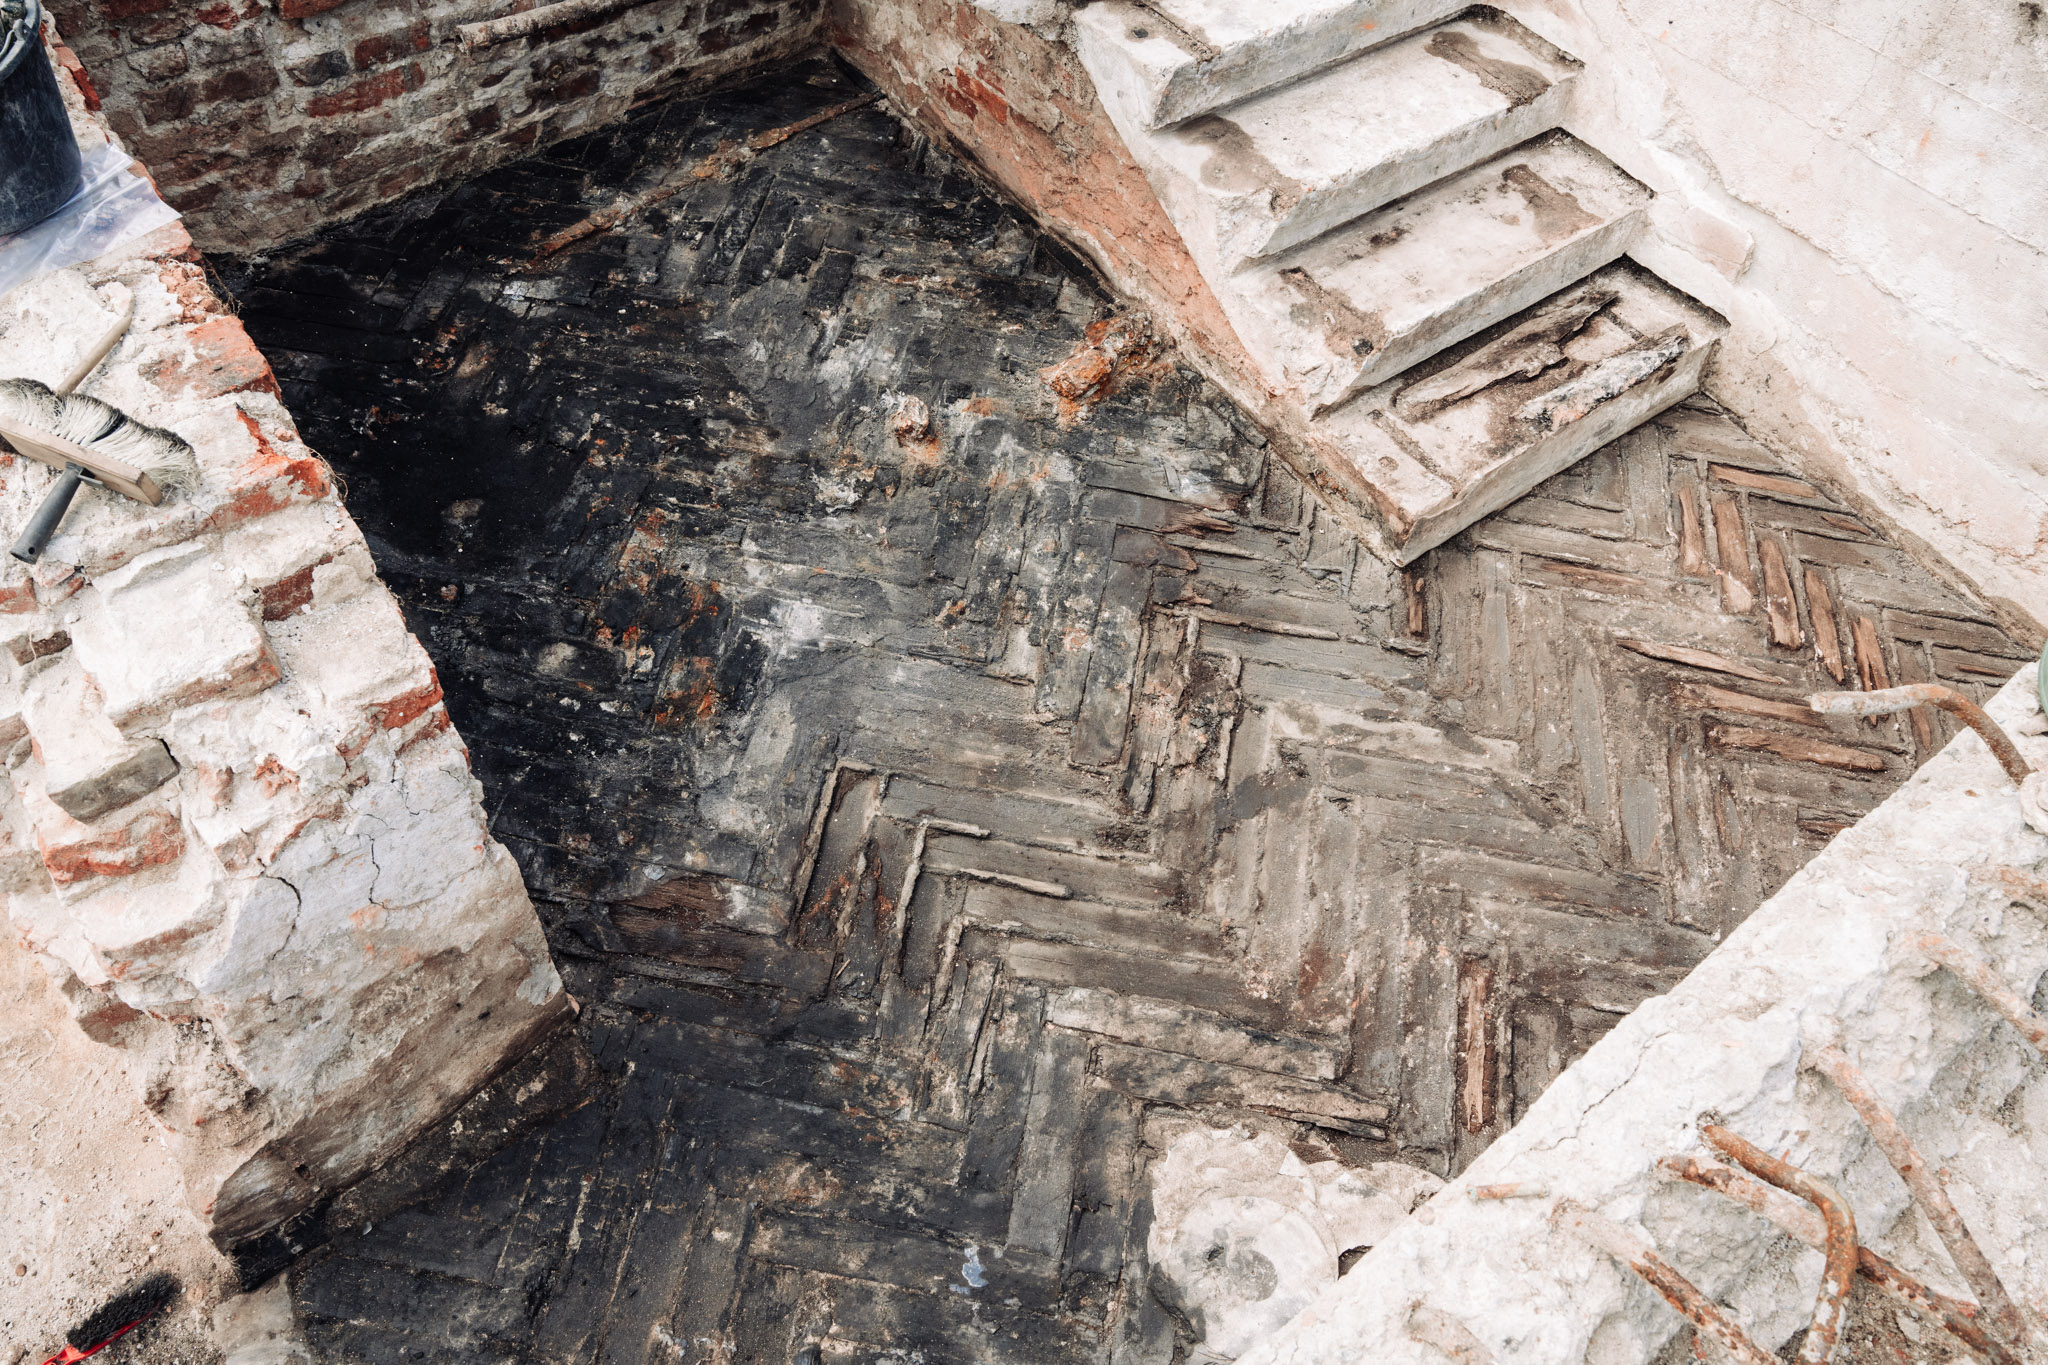 Zdjęcie pokazuje badania archeologiczne Pałacu Brühla. Podłoga pomieszczenia, w której odciśnięte są wgłębienia po podłużnych klepkach ułożonych w jodełkę. W jednym z rogów pomieszczenia znajdują się uszkodzone schody.